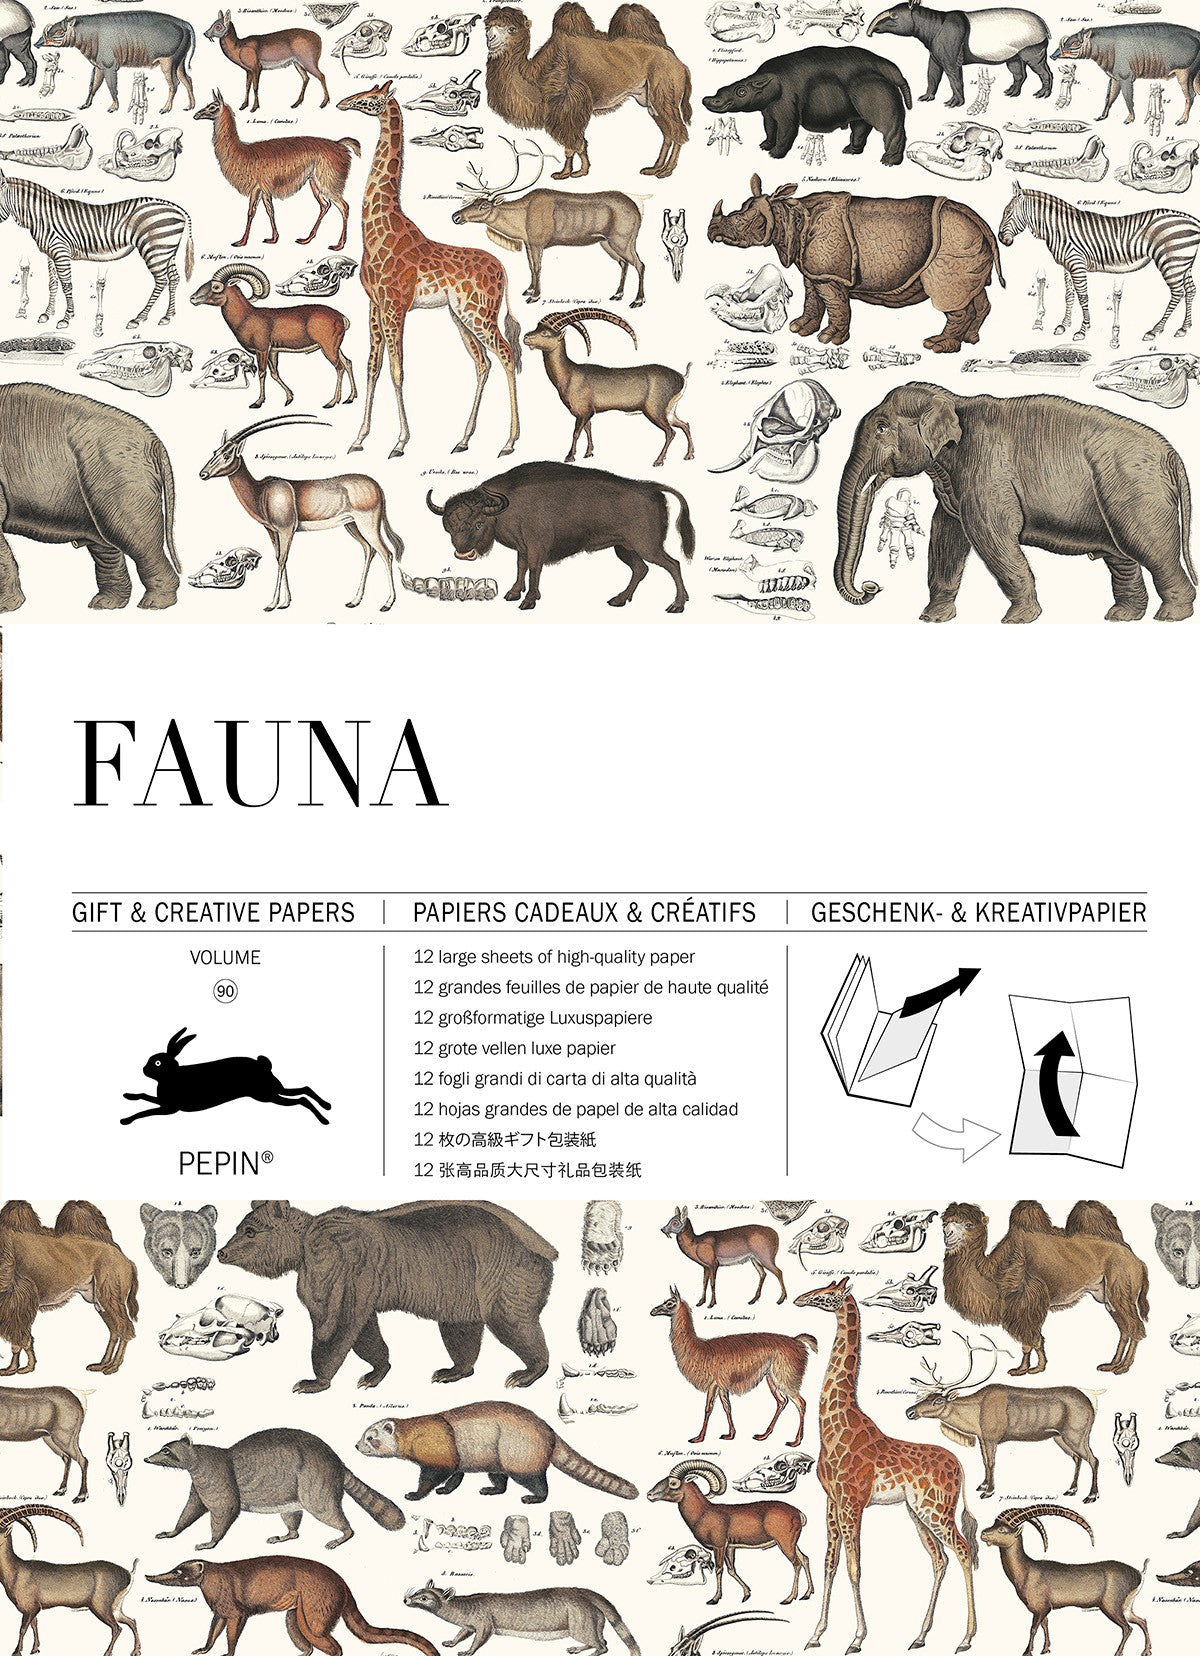 Pepin Press Geschenk- & Kreativpapier "Fauna"